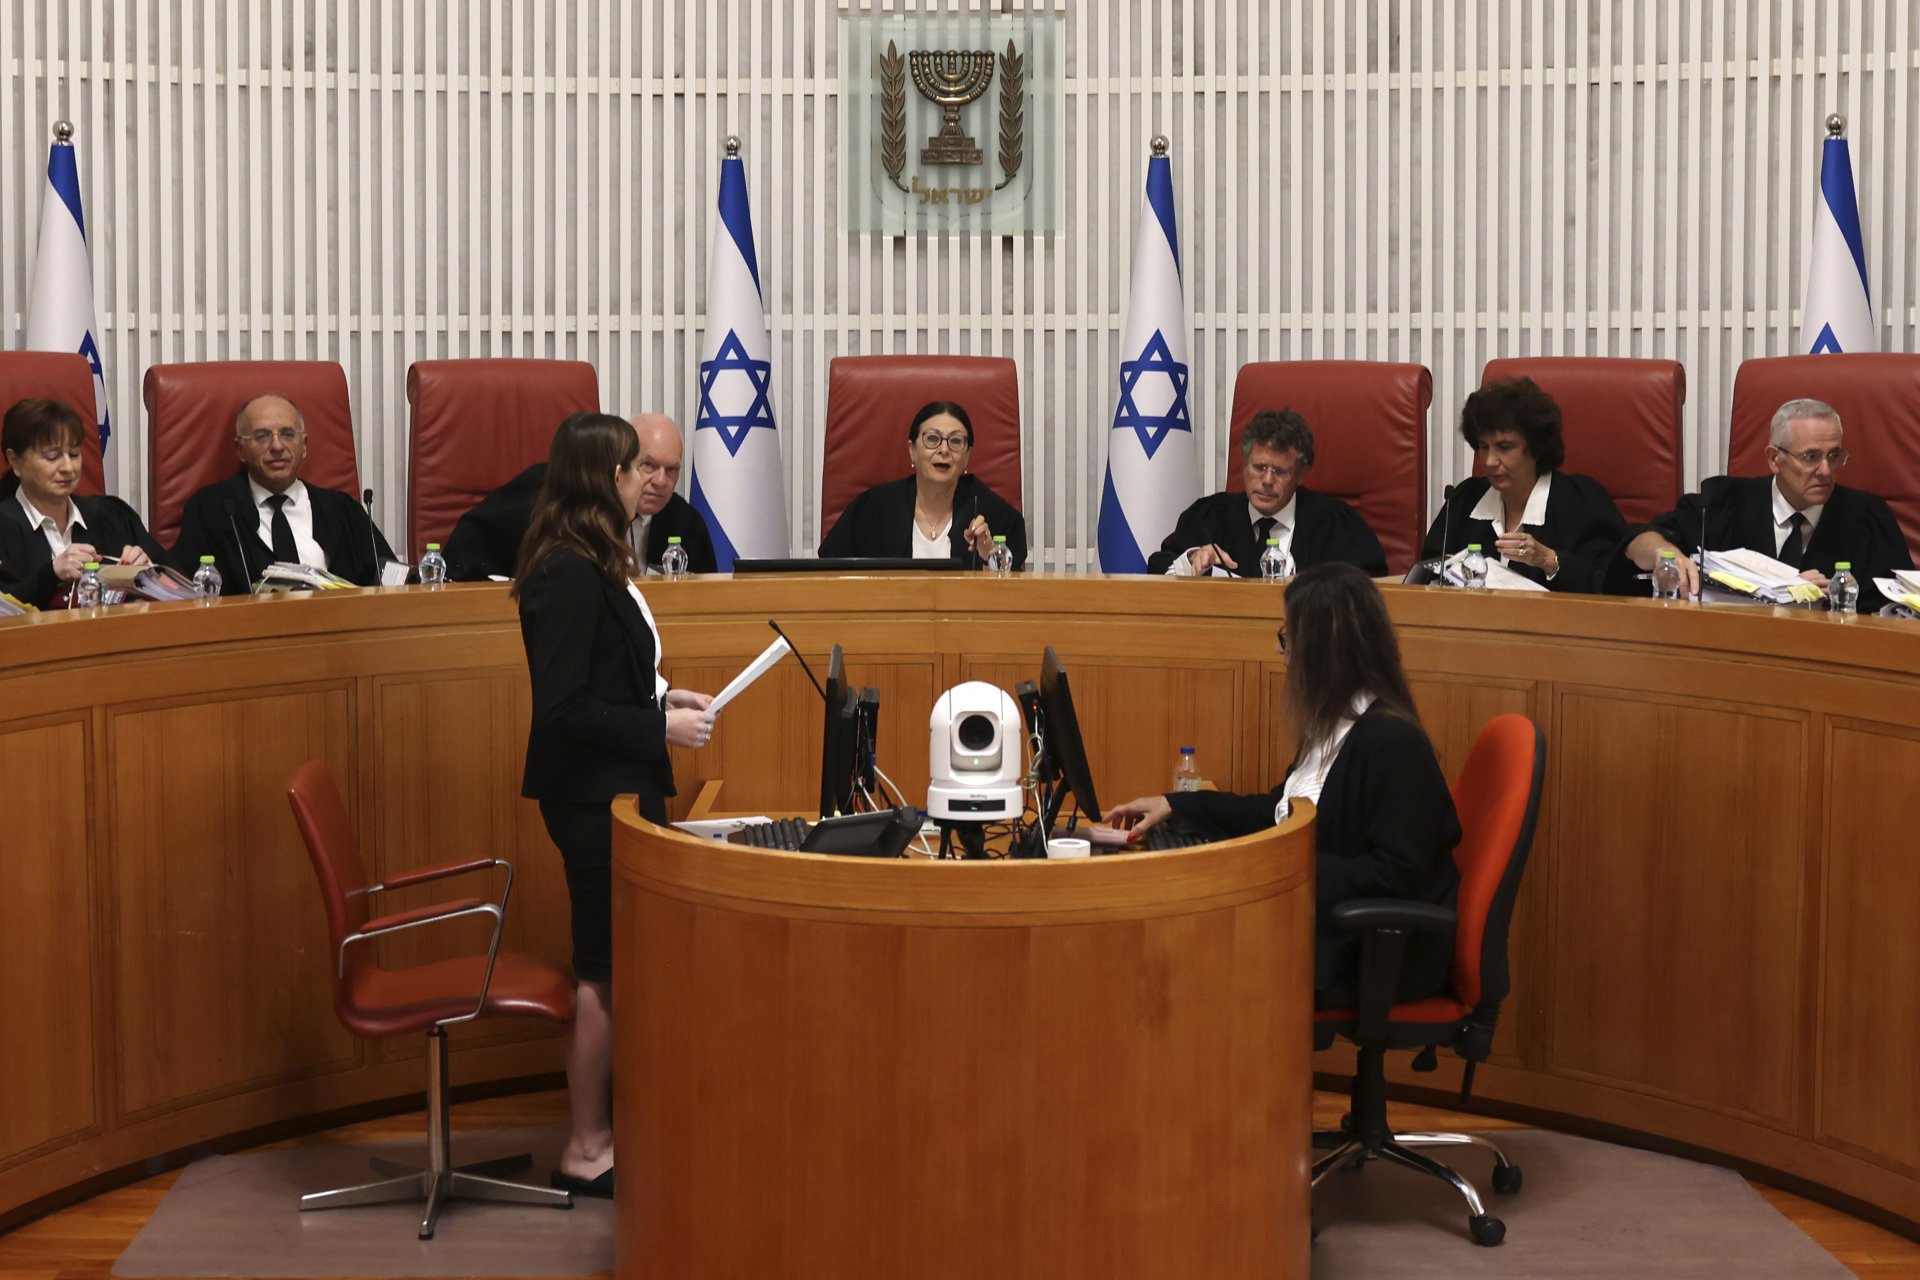  Председателката на израелския Върховен съд Естер Хают води заседанието на 1 януари, на което беше взето решението